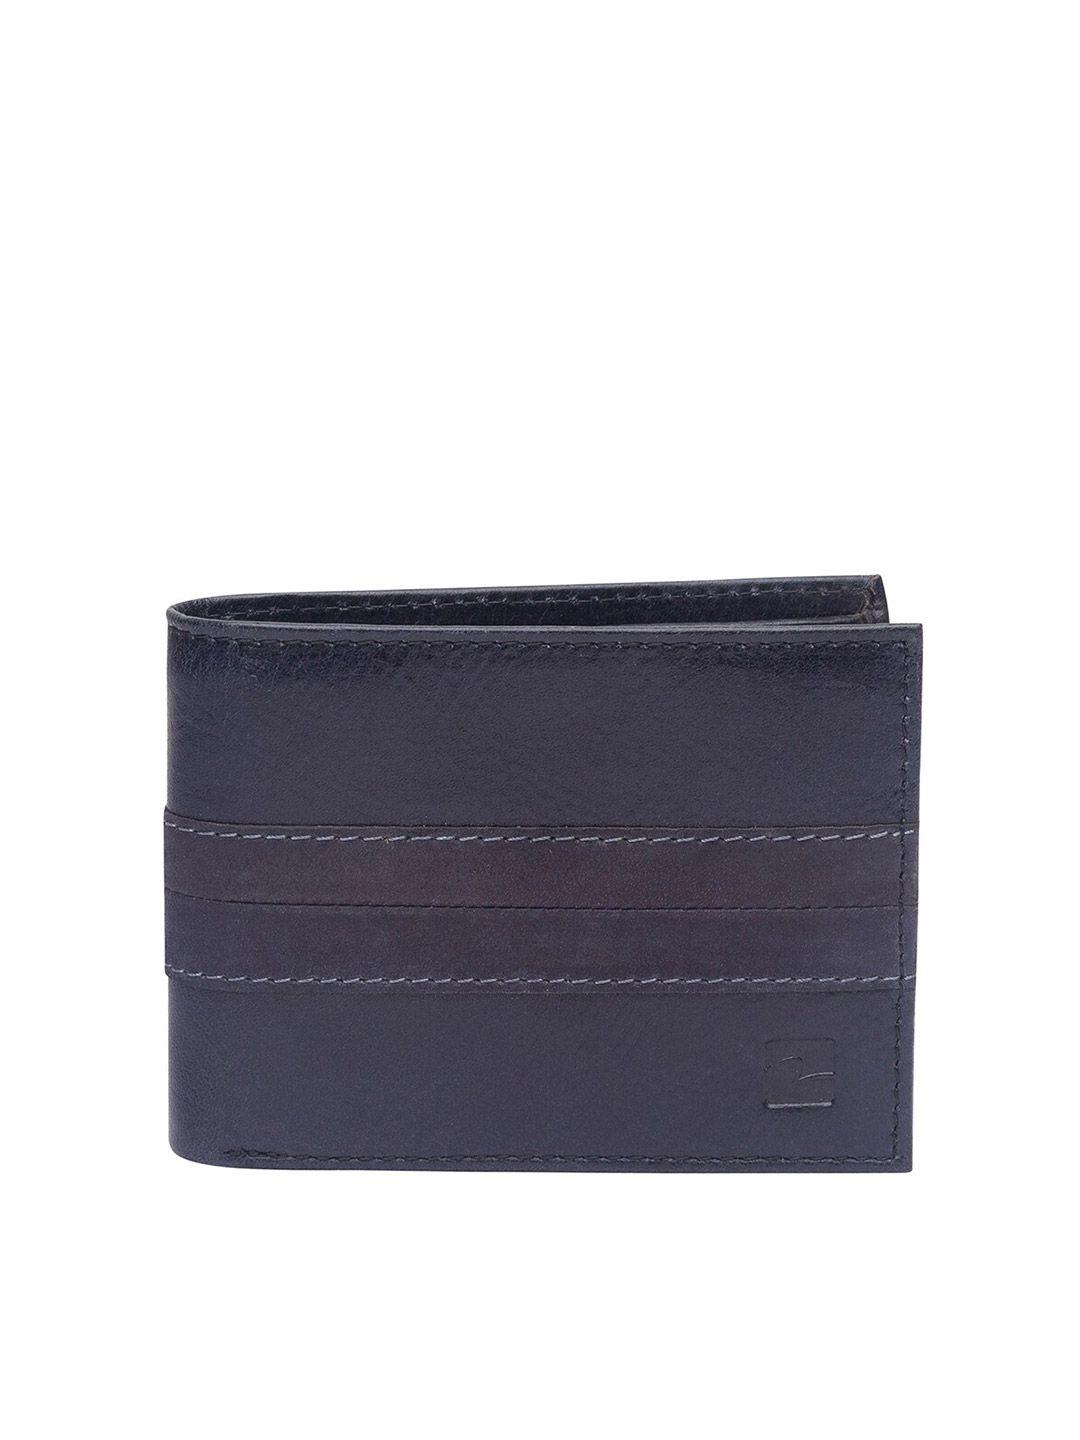 spykar men grey leather two fold wallet